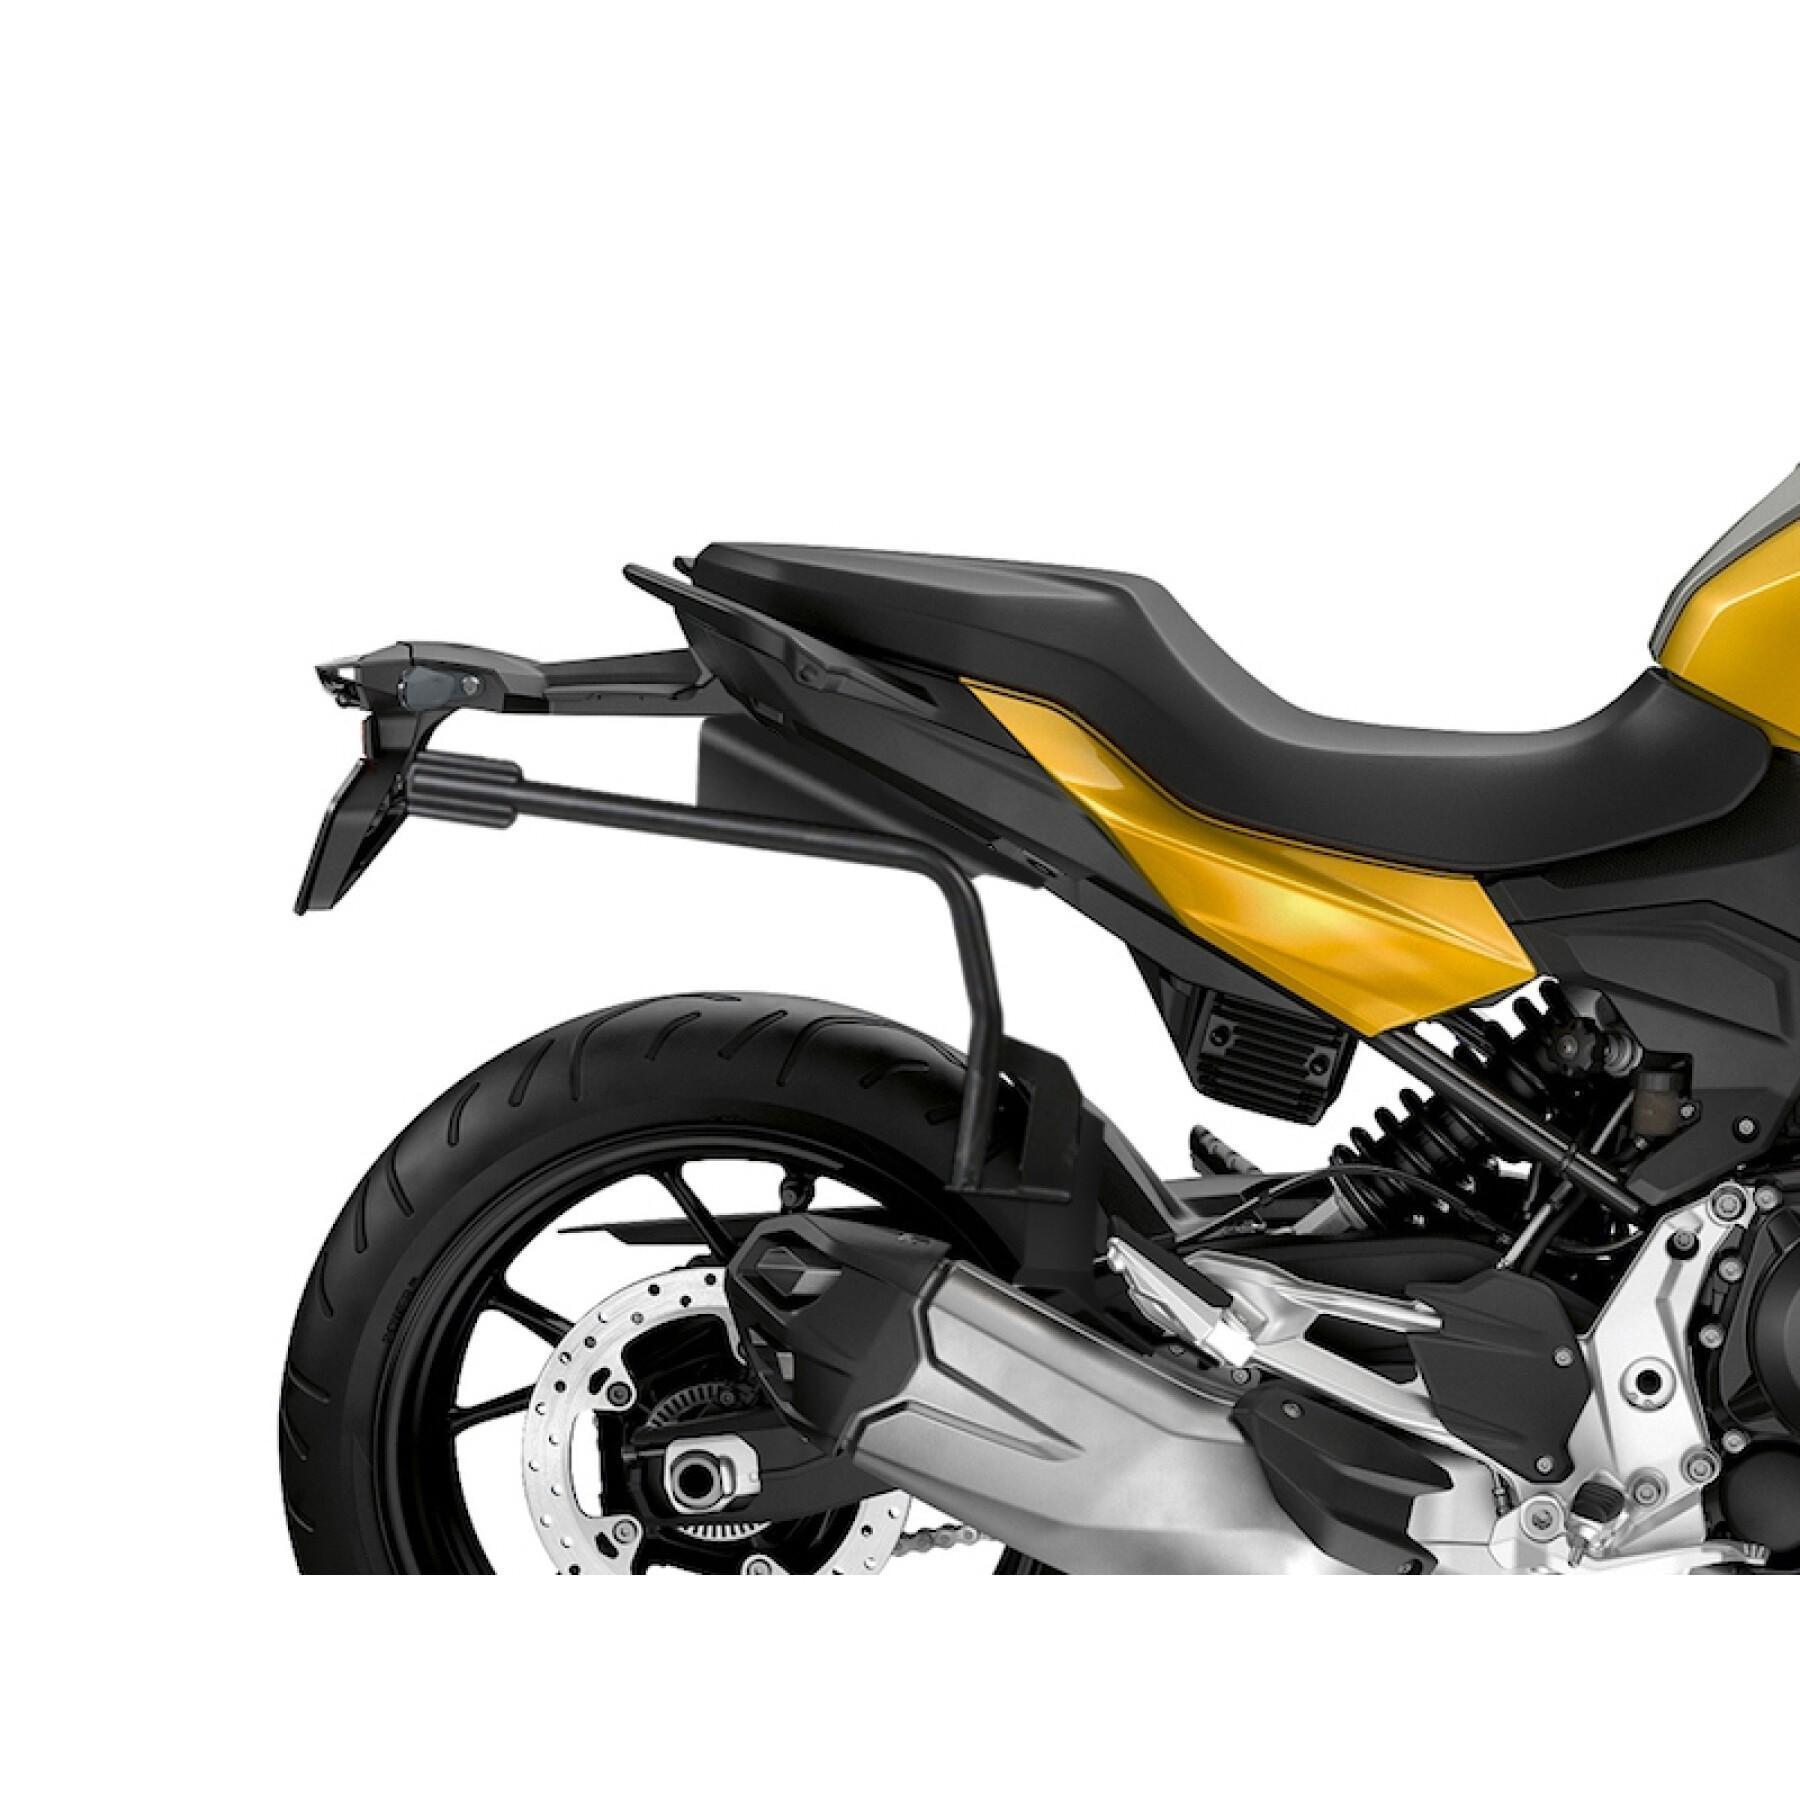 Podpora boczna motocykla Shad 3P System Bmw F900 X/Xr 2020-2020